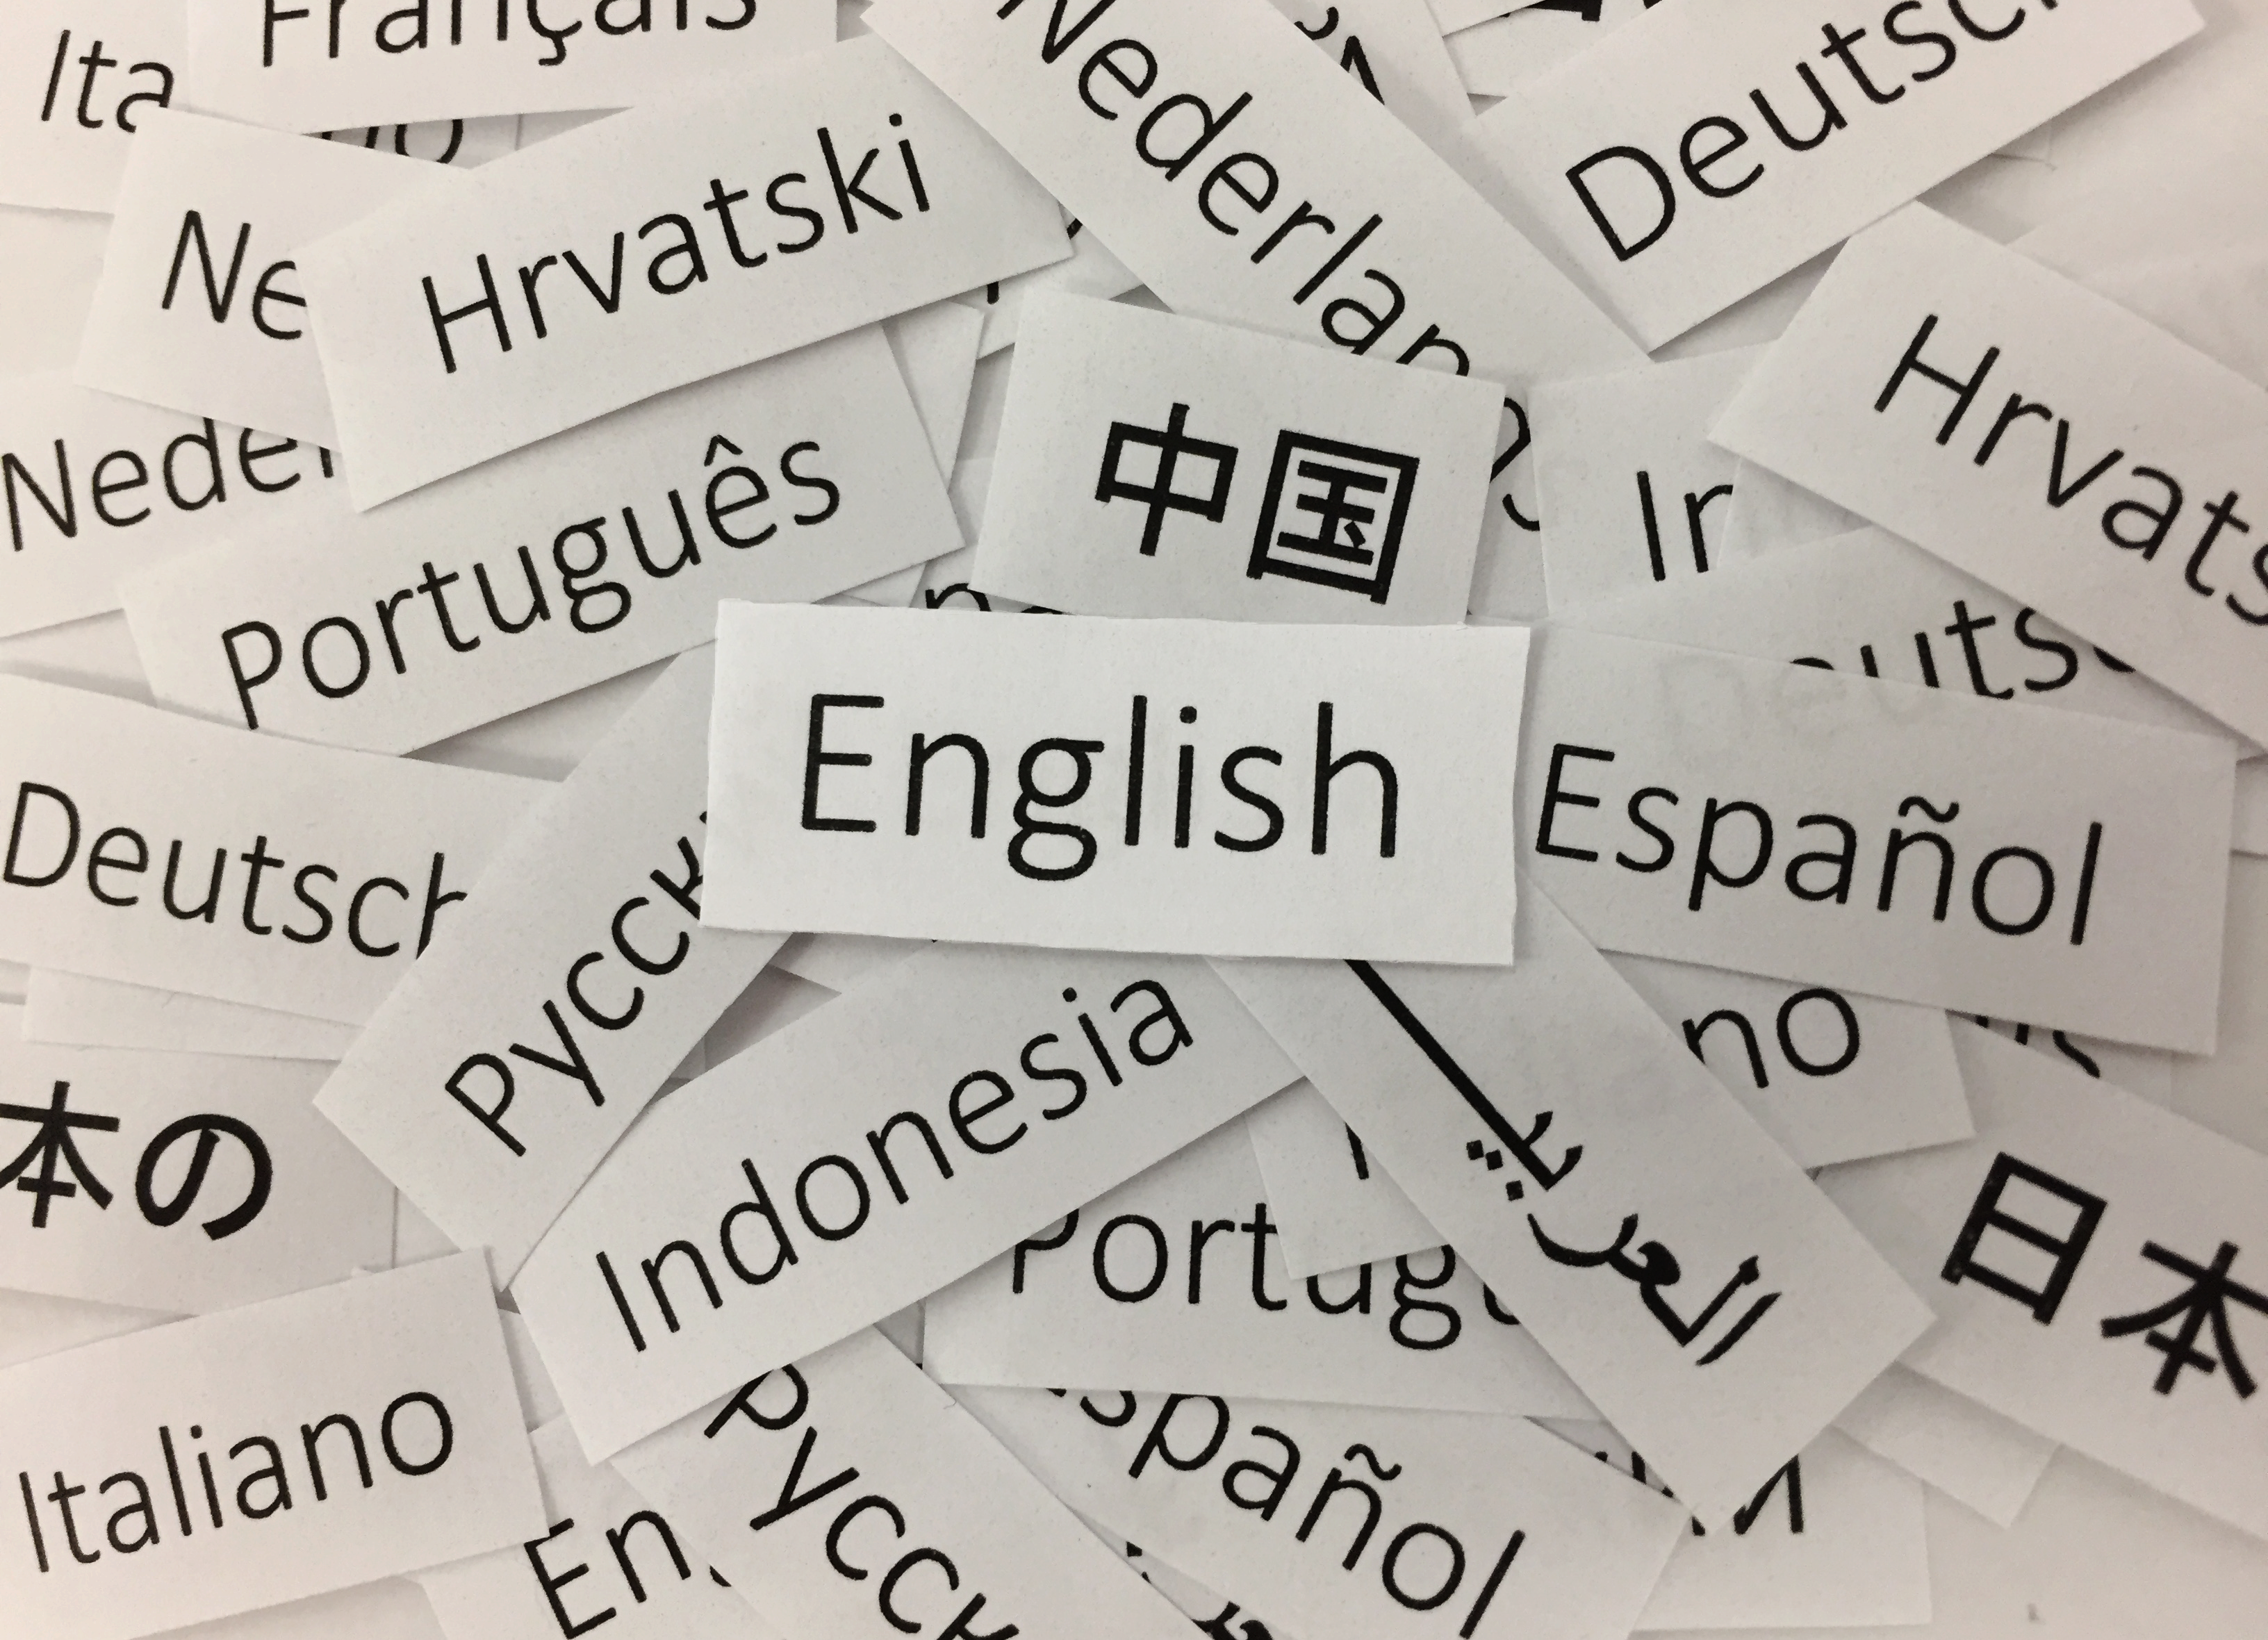 Centro de Escrita seleciona artigos para tradução ou revisão em inglês - O  Perobal